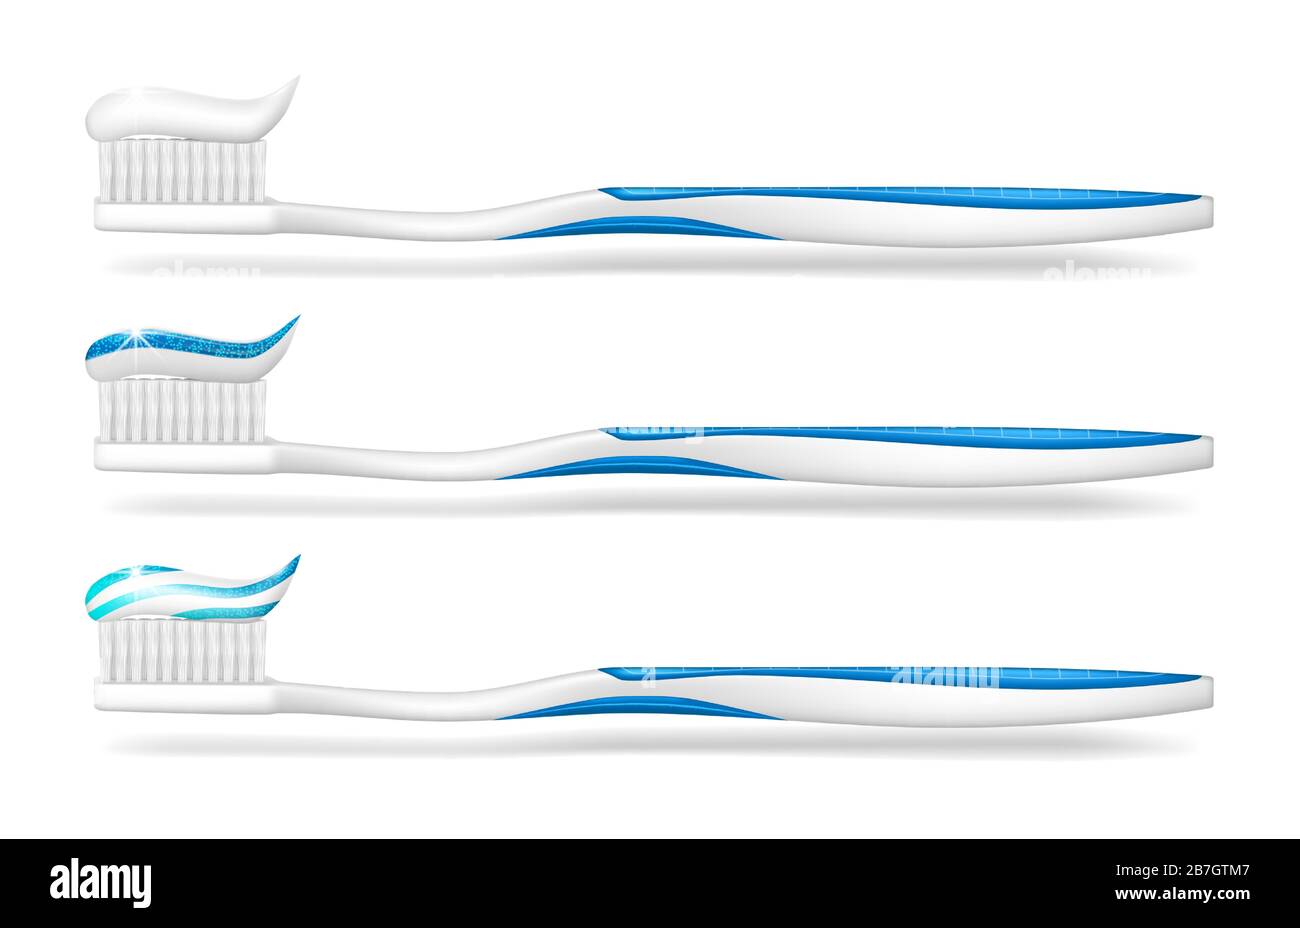 Zahnbürste mit Zahnpasta isoliert. Verspotste Zahnbürste für das Posterdesign im Zahnpflege. Stomatologie weiße Zahnbürste. Vektorgrafiken Stock Vektor